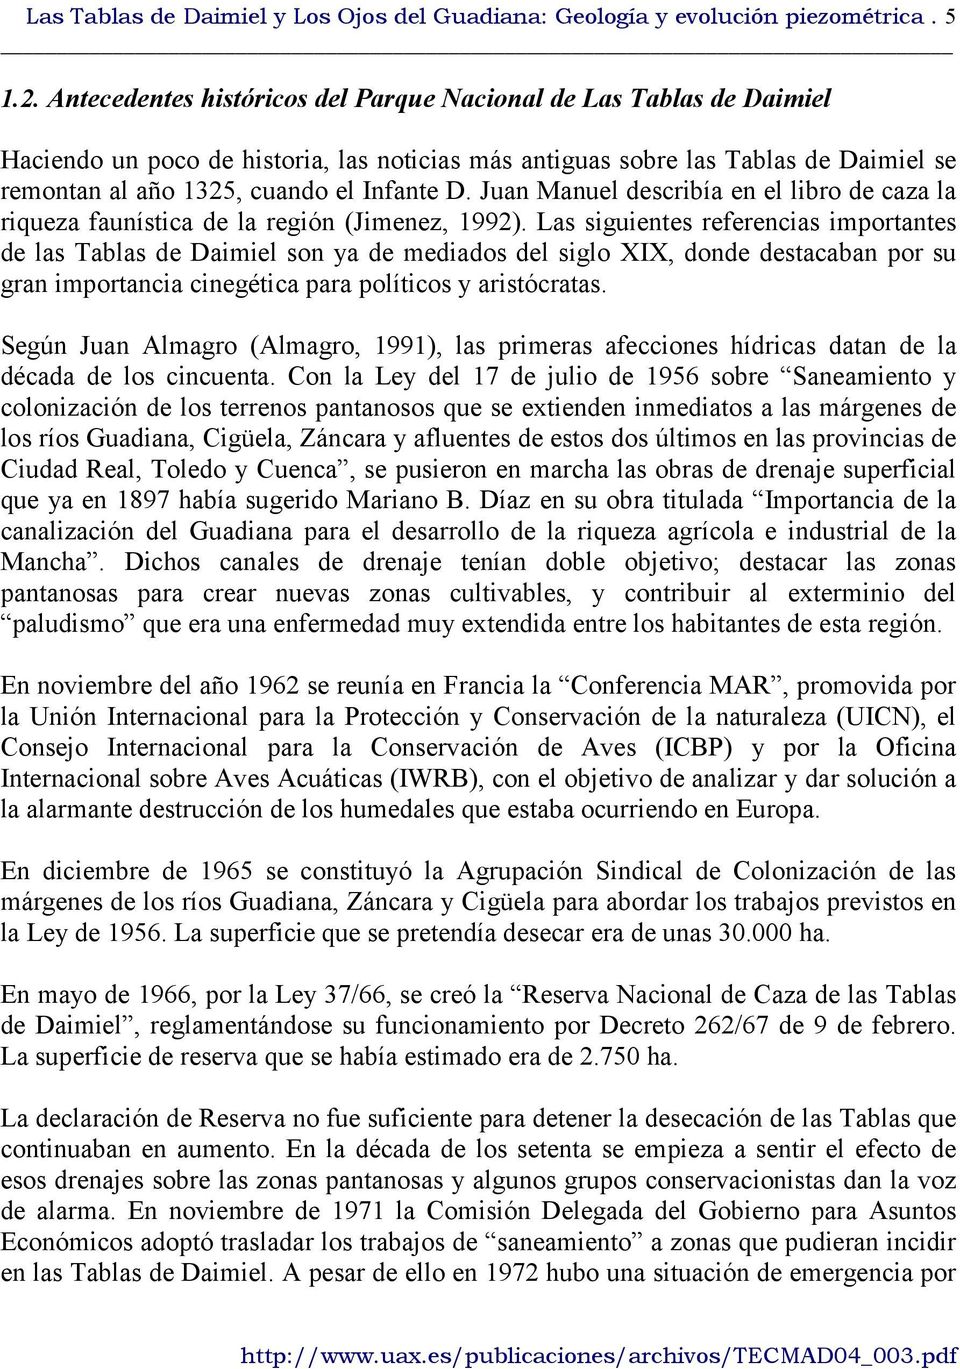 Juan Manuel describía en el libro de caza la riqueza faunística de la región (Jimenez, 1992).